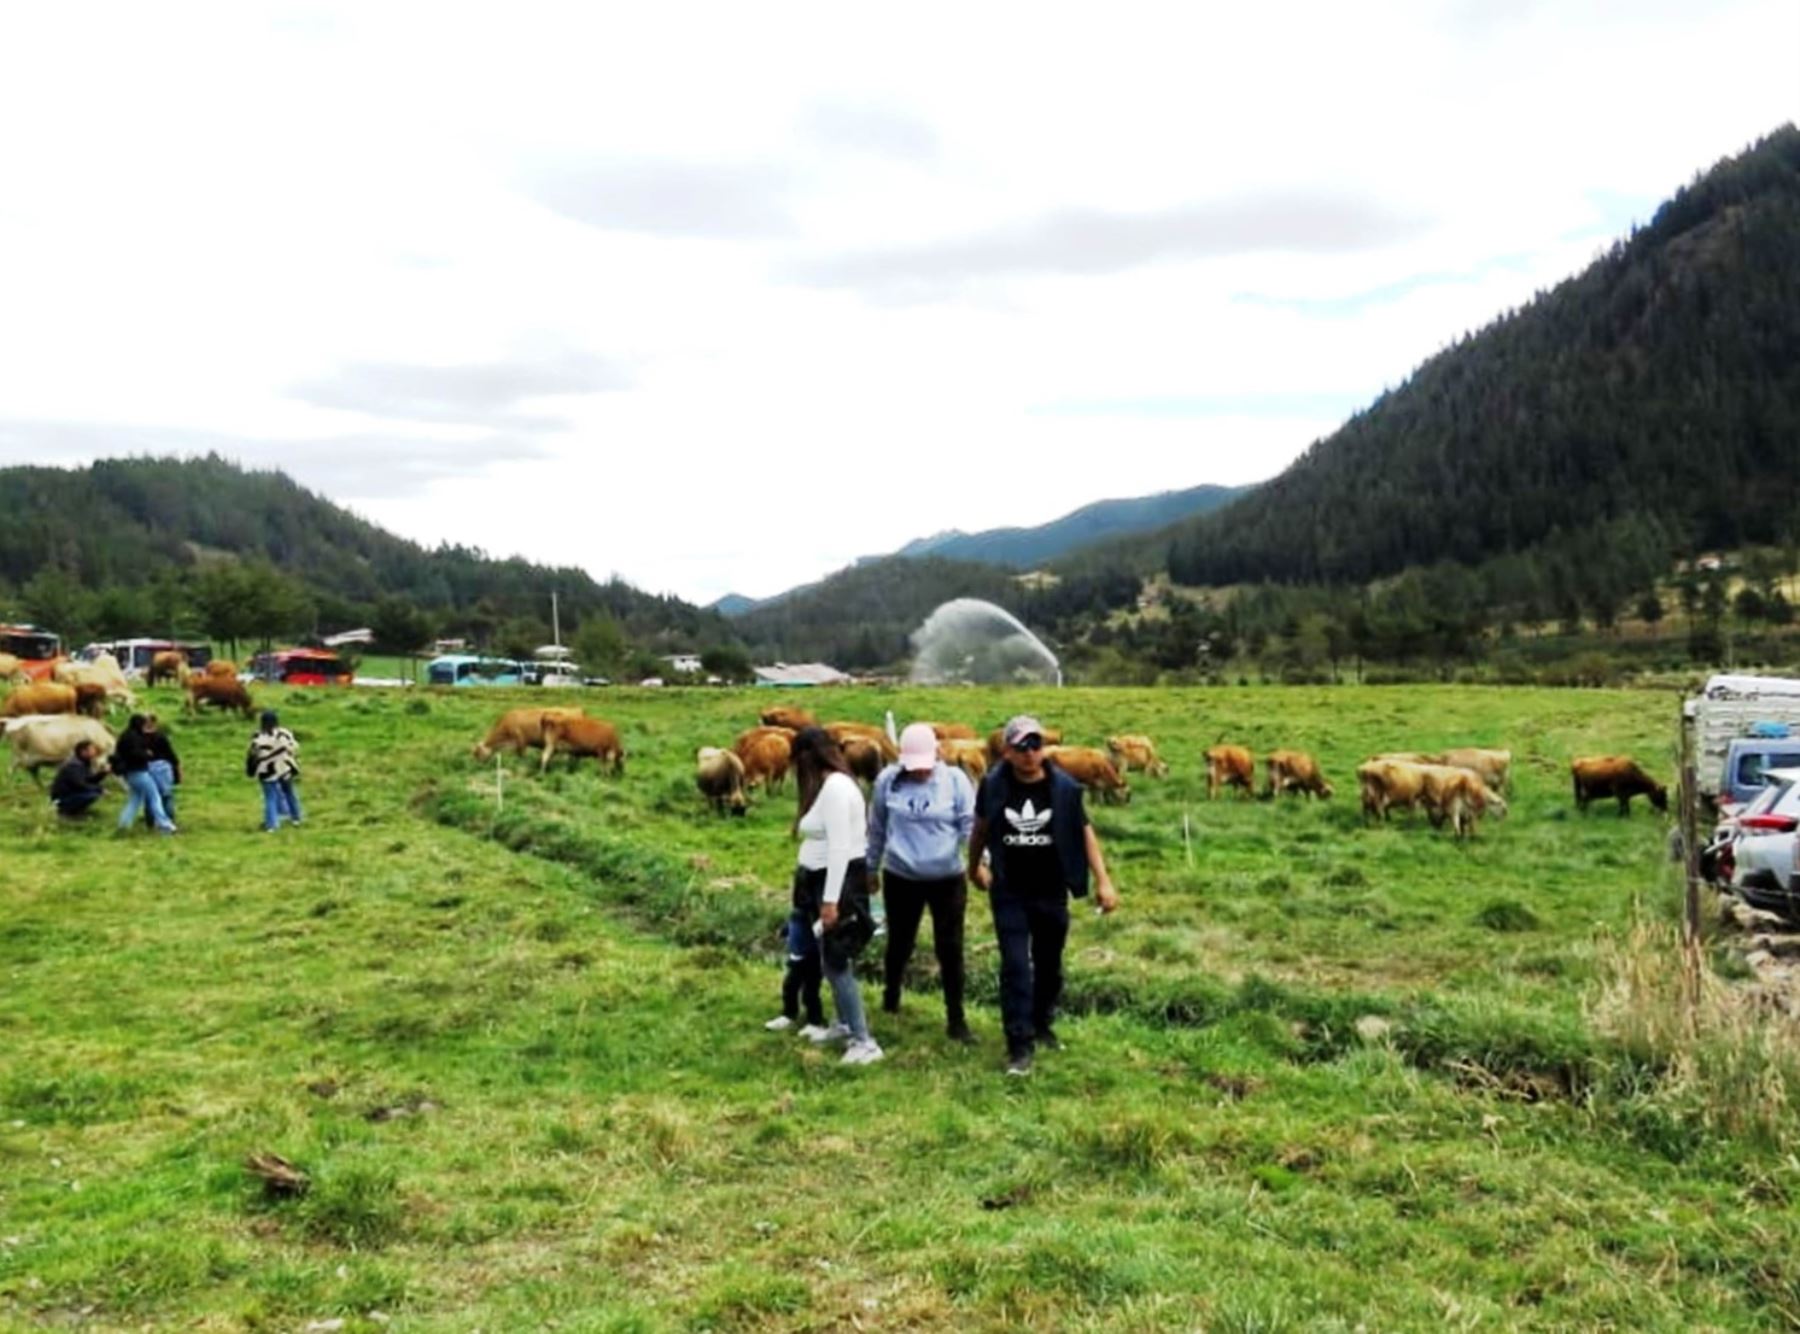 La granja Porcón es uno de los destinos más visitados por los turistas que arriban a Cajamarca, como quedó demostrado en el reciente feriado largo por Fiestas Patrias. Foto: ANDINA/difusión.